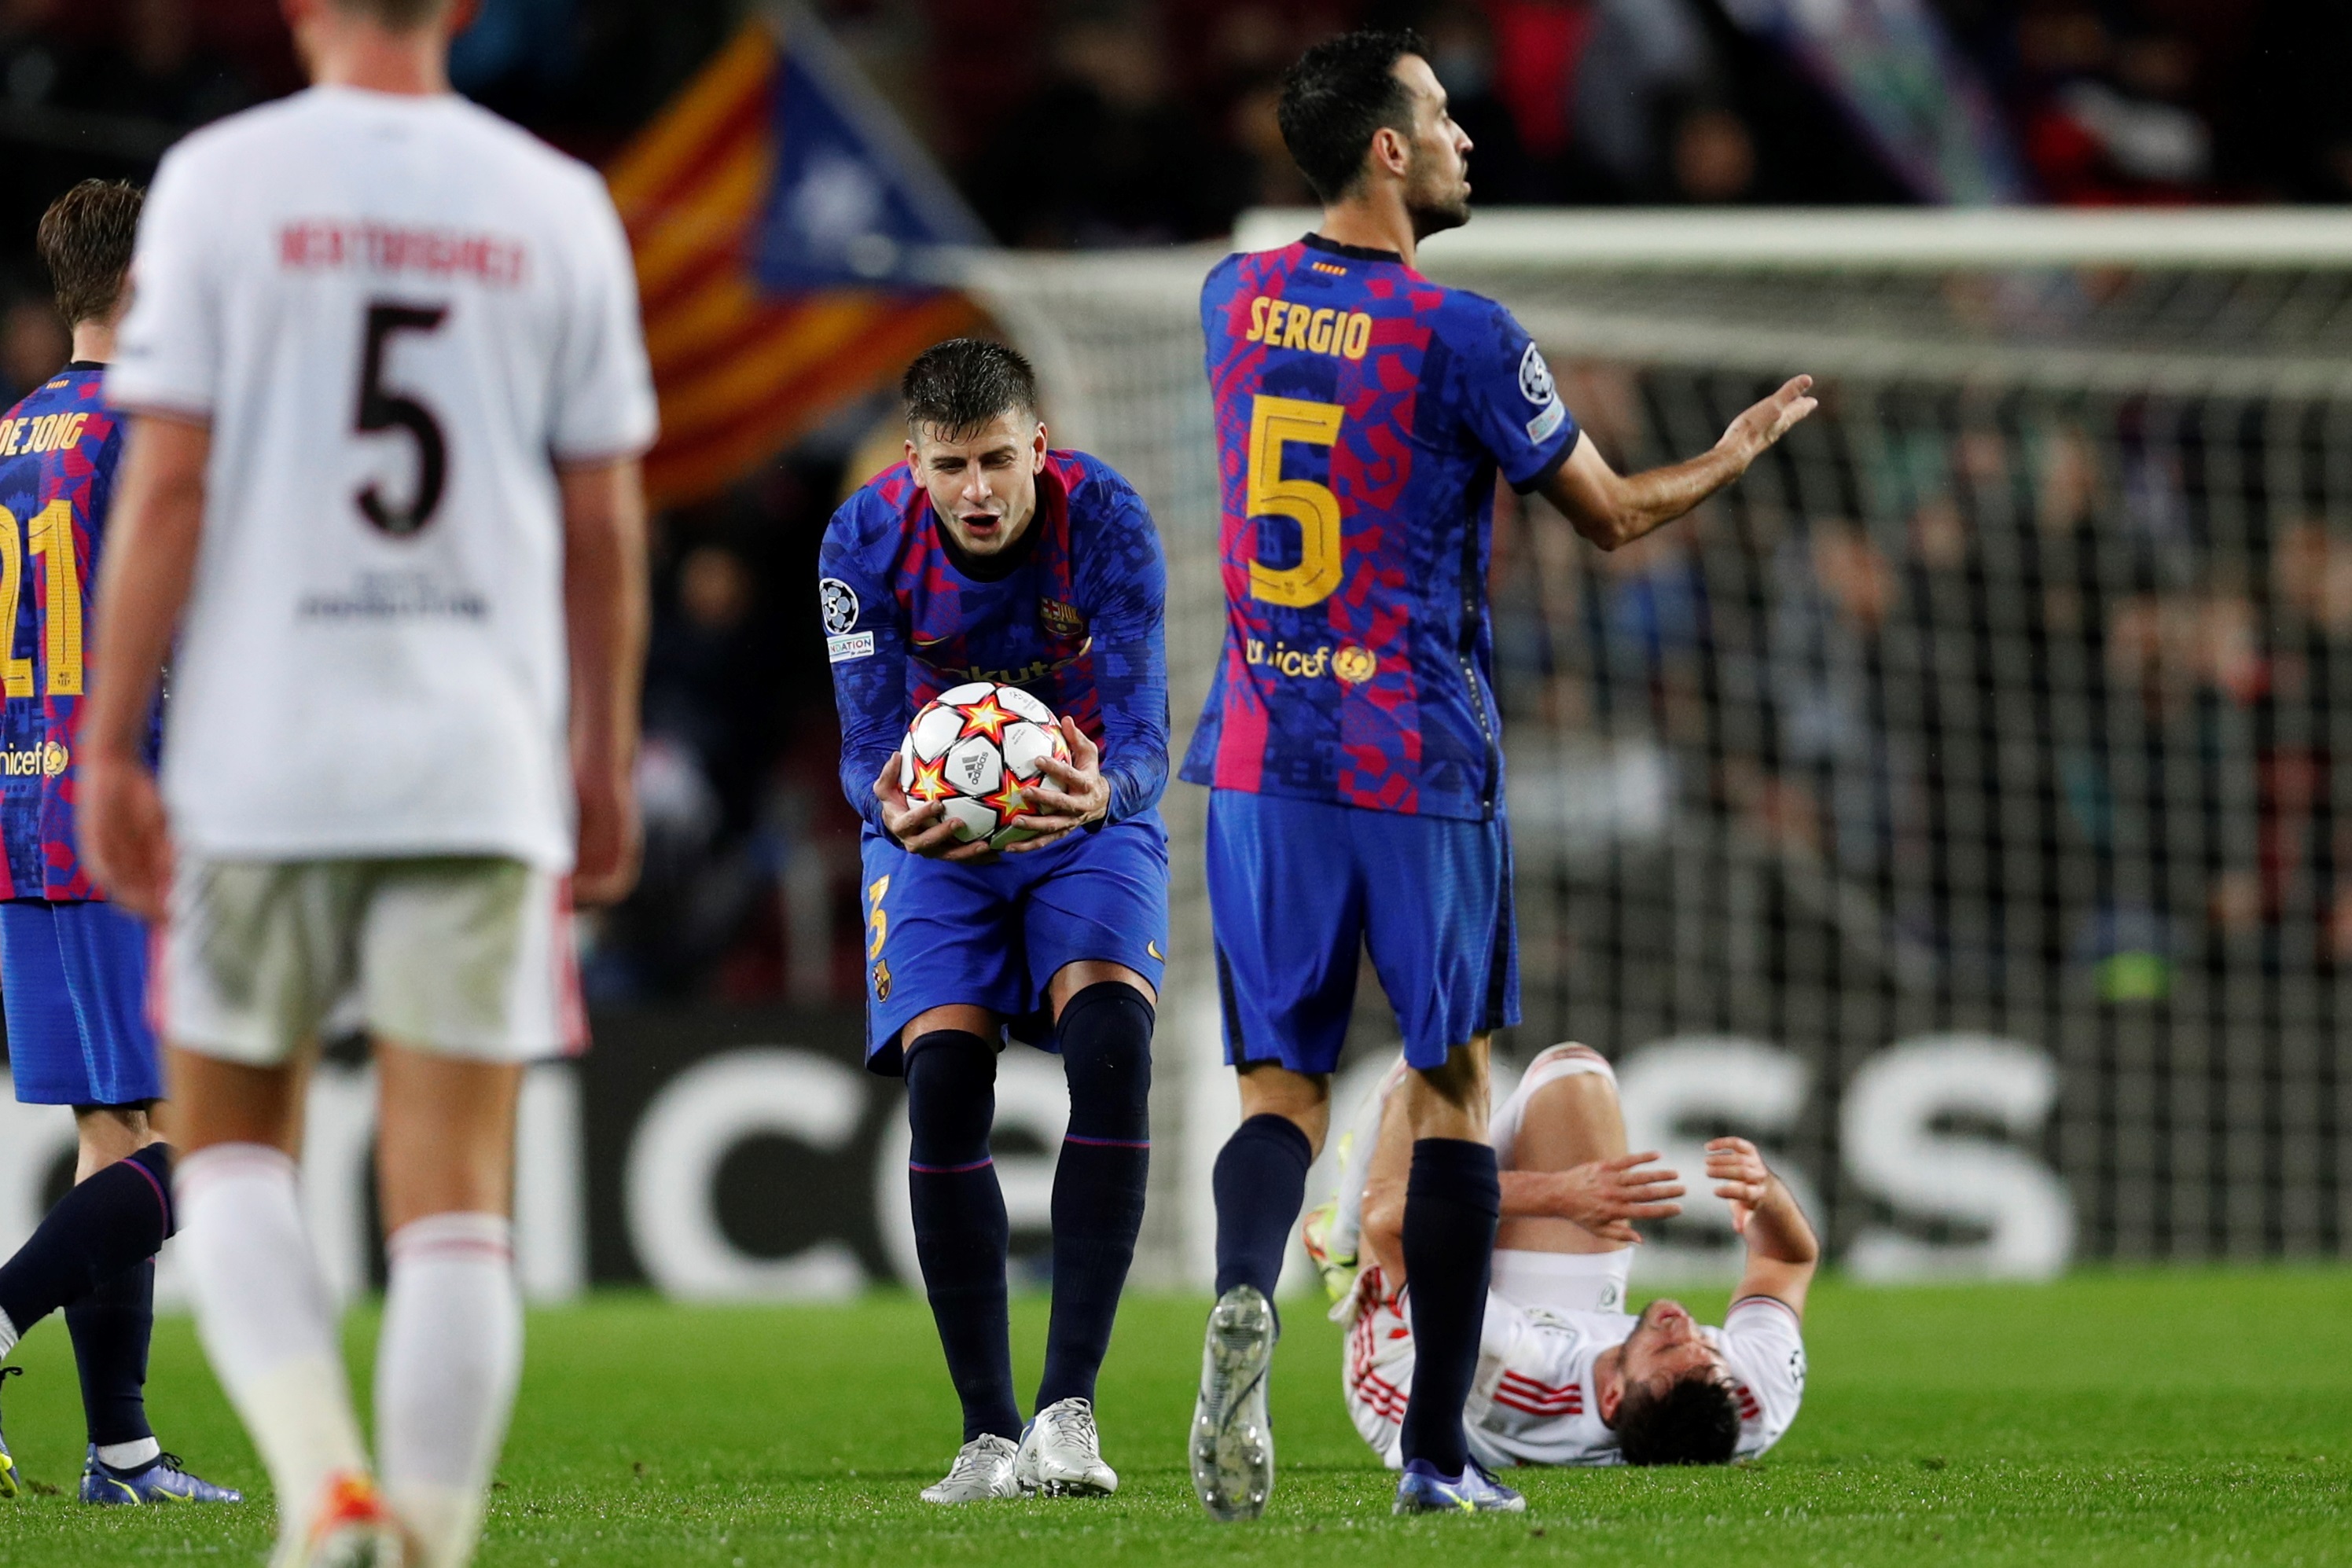 El Barça irá al corredor de la muerte de Múnich... para jugarse media temporada